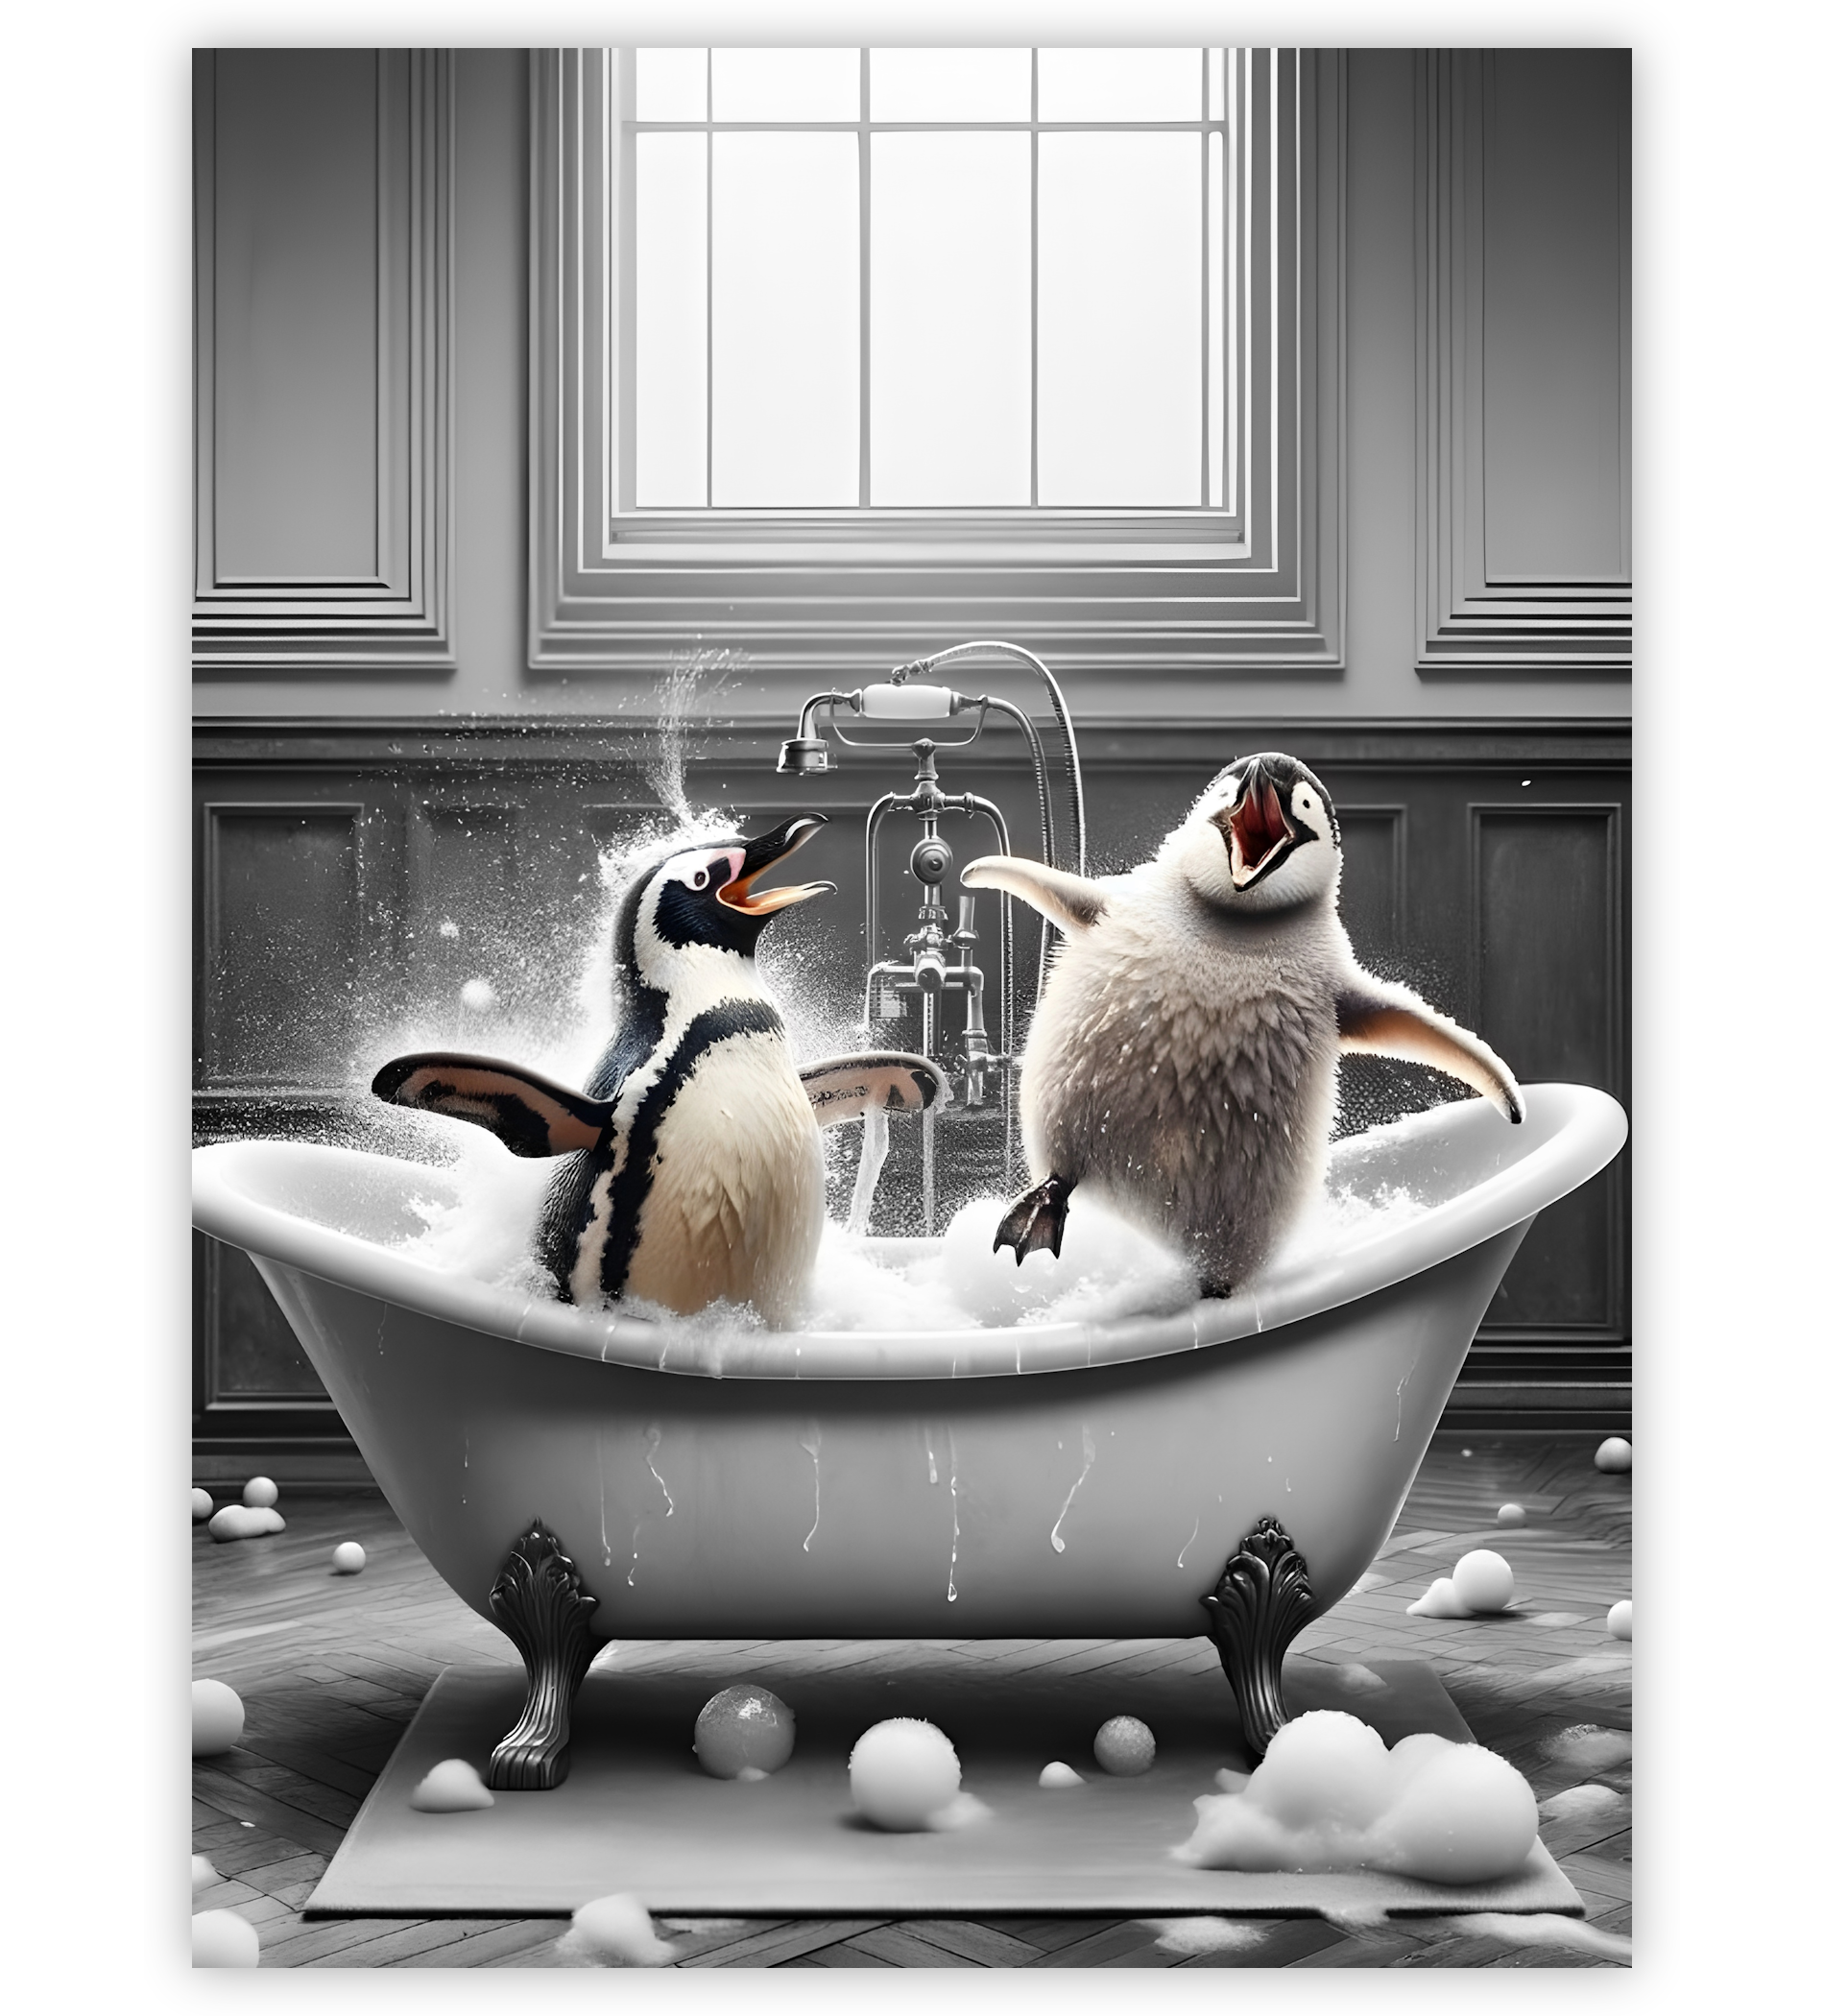 Poster, Wandbild von Pinguine in Badewanne